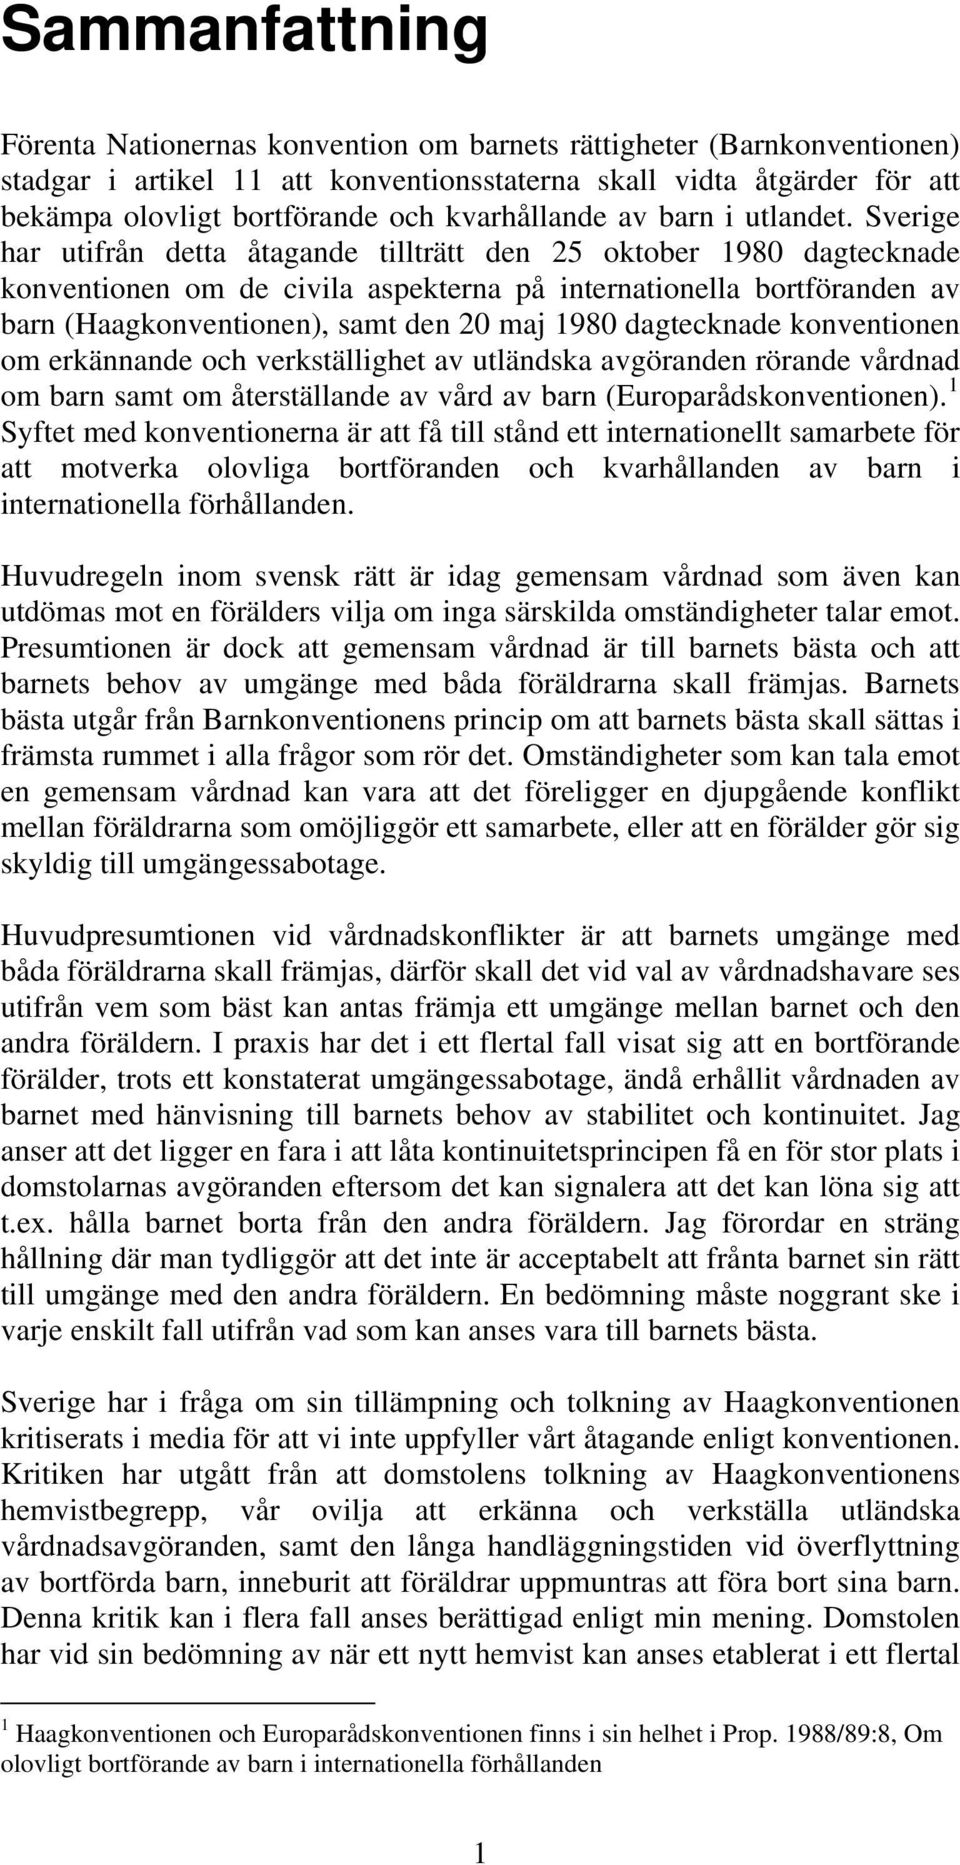 Sverige har utifrån detta åtagande tillträtt den 25 oktober 1980 dagtecknade konventionen om de civila aspekterna på internationella bortföranden av barn (Haagkonventionen), samt den 20 maj 1980